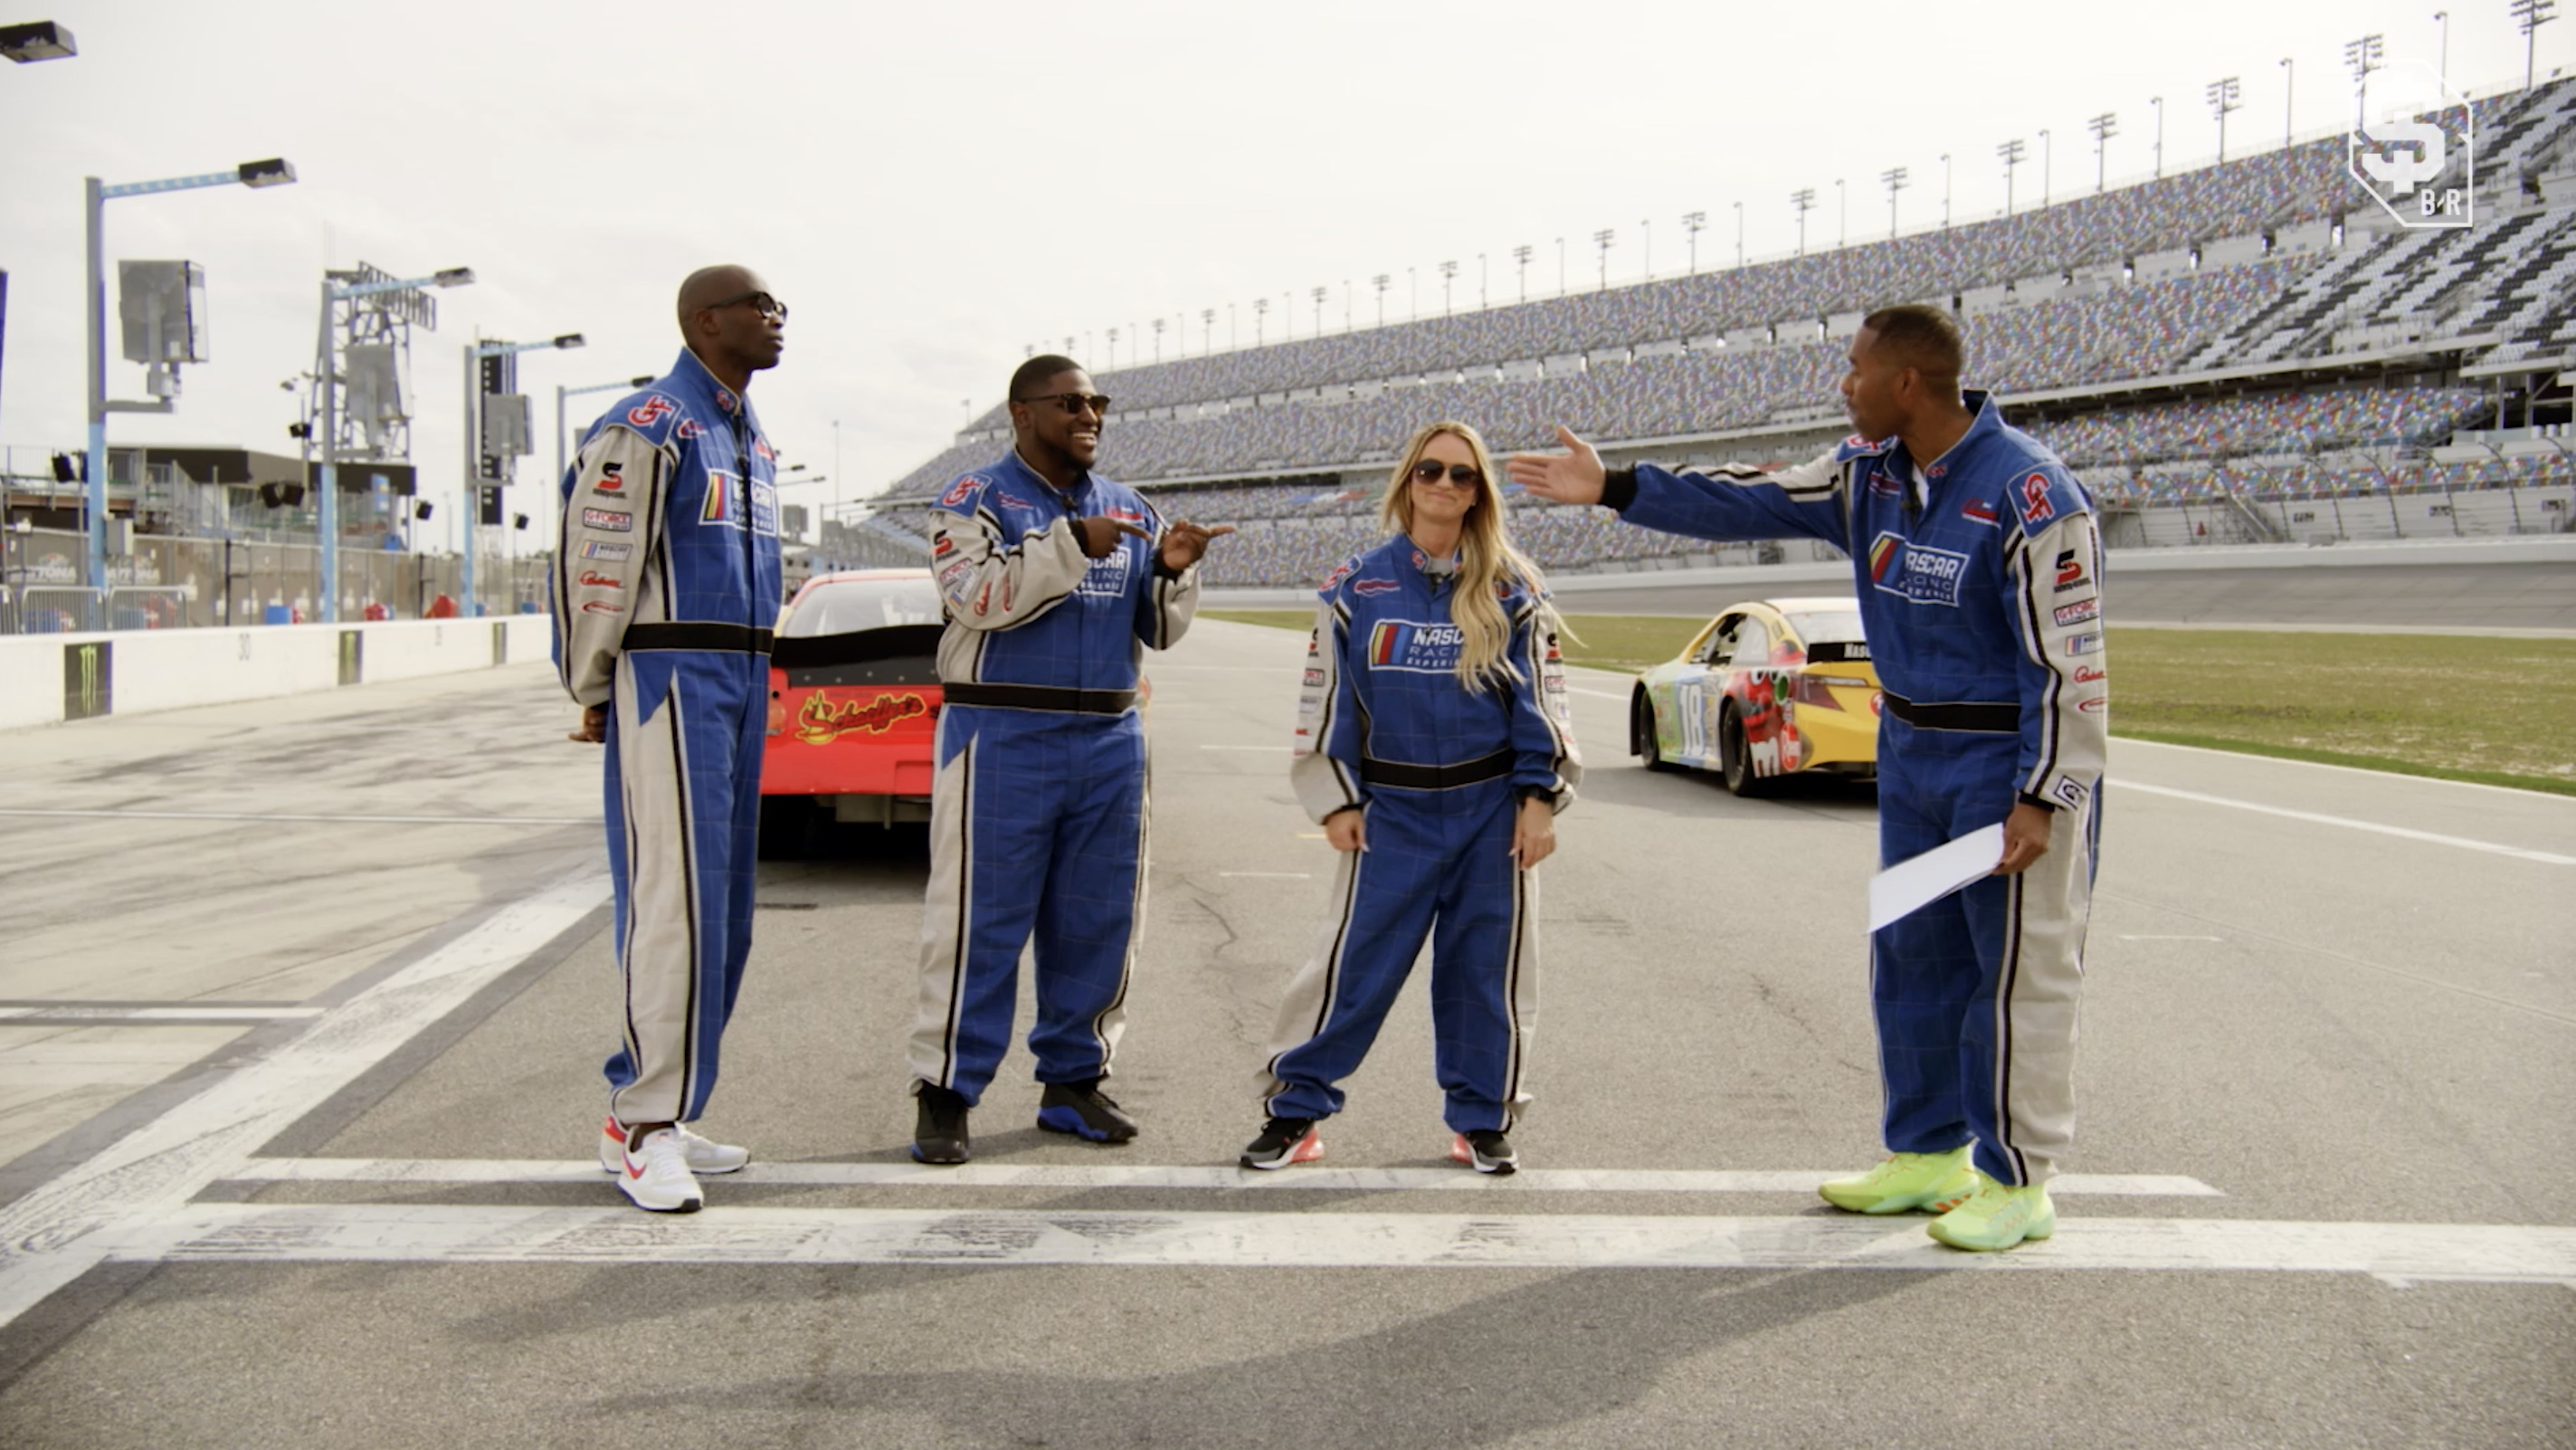 B/R Betting NASCAR Race 🏁 (Full Episode)